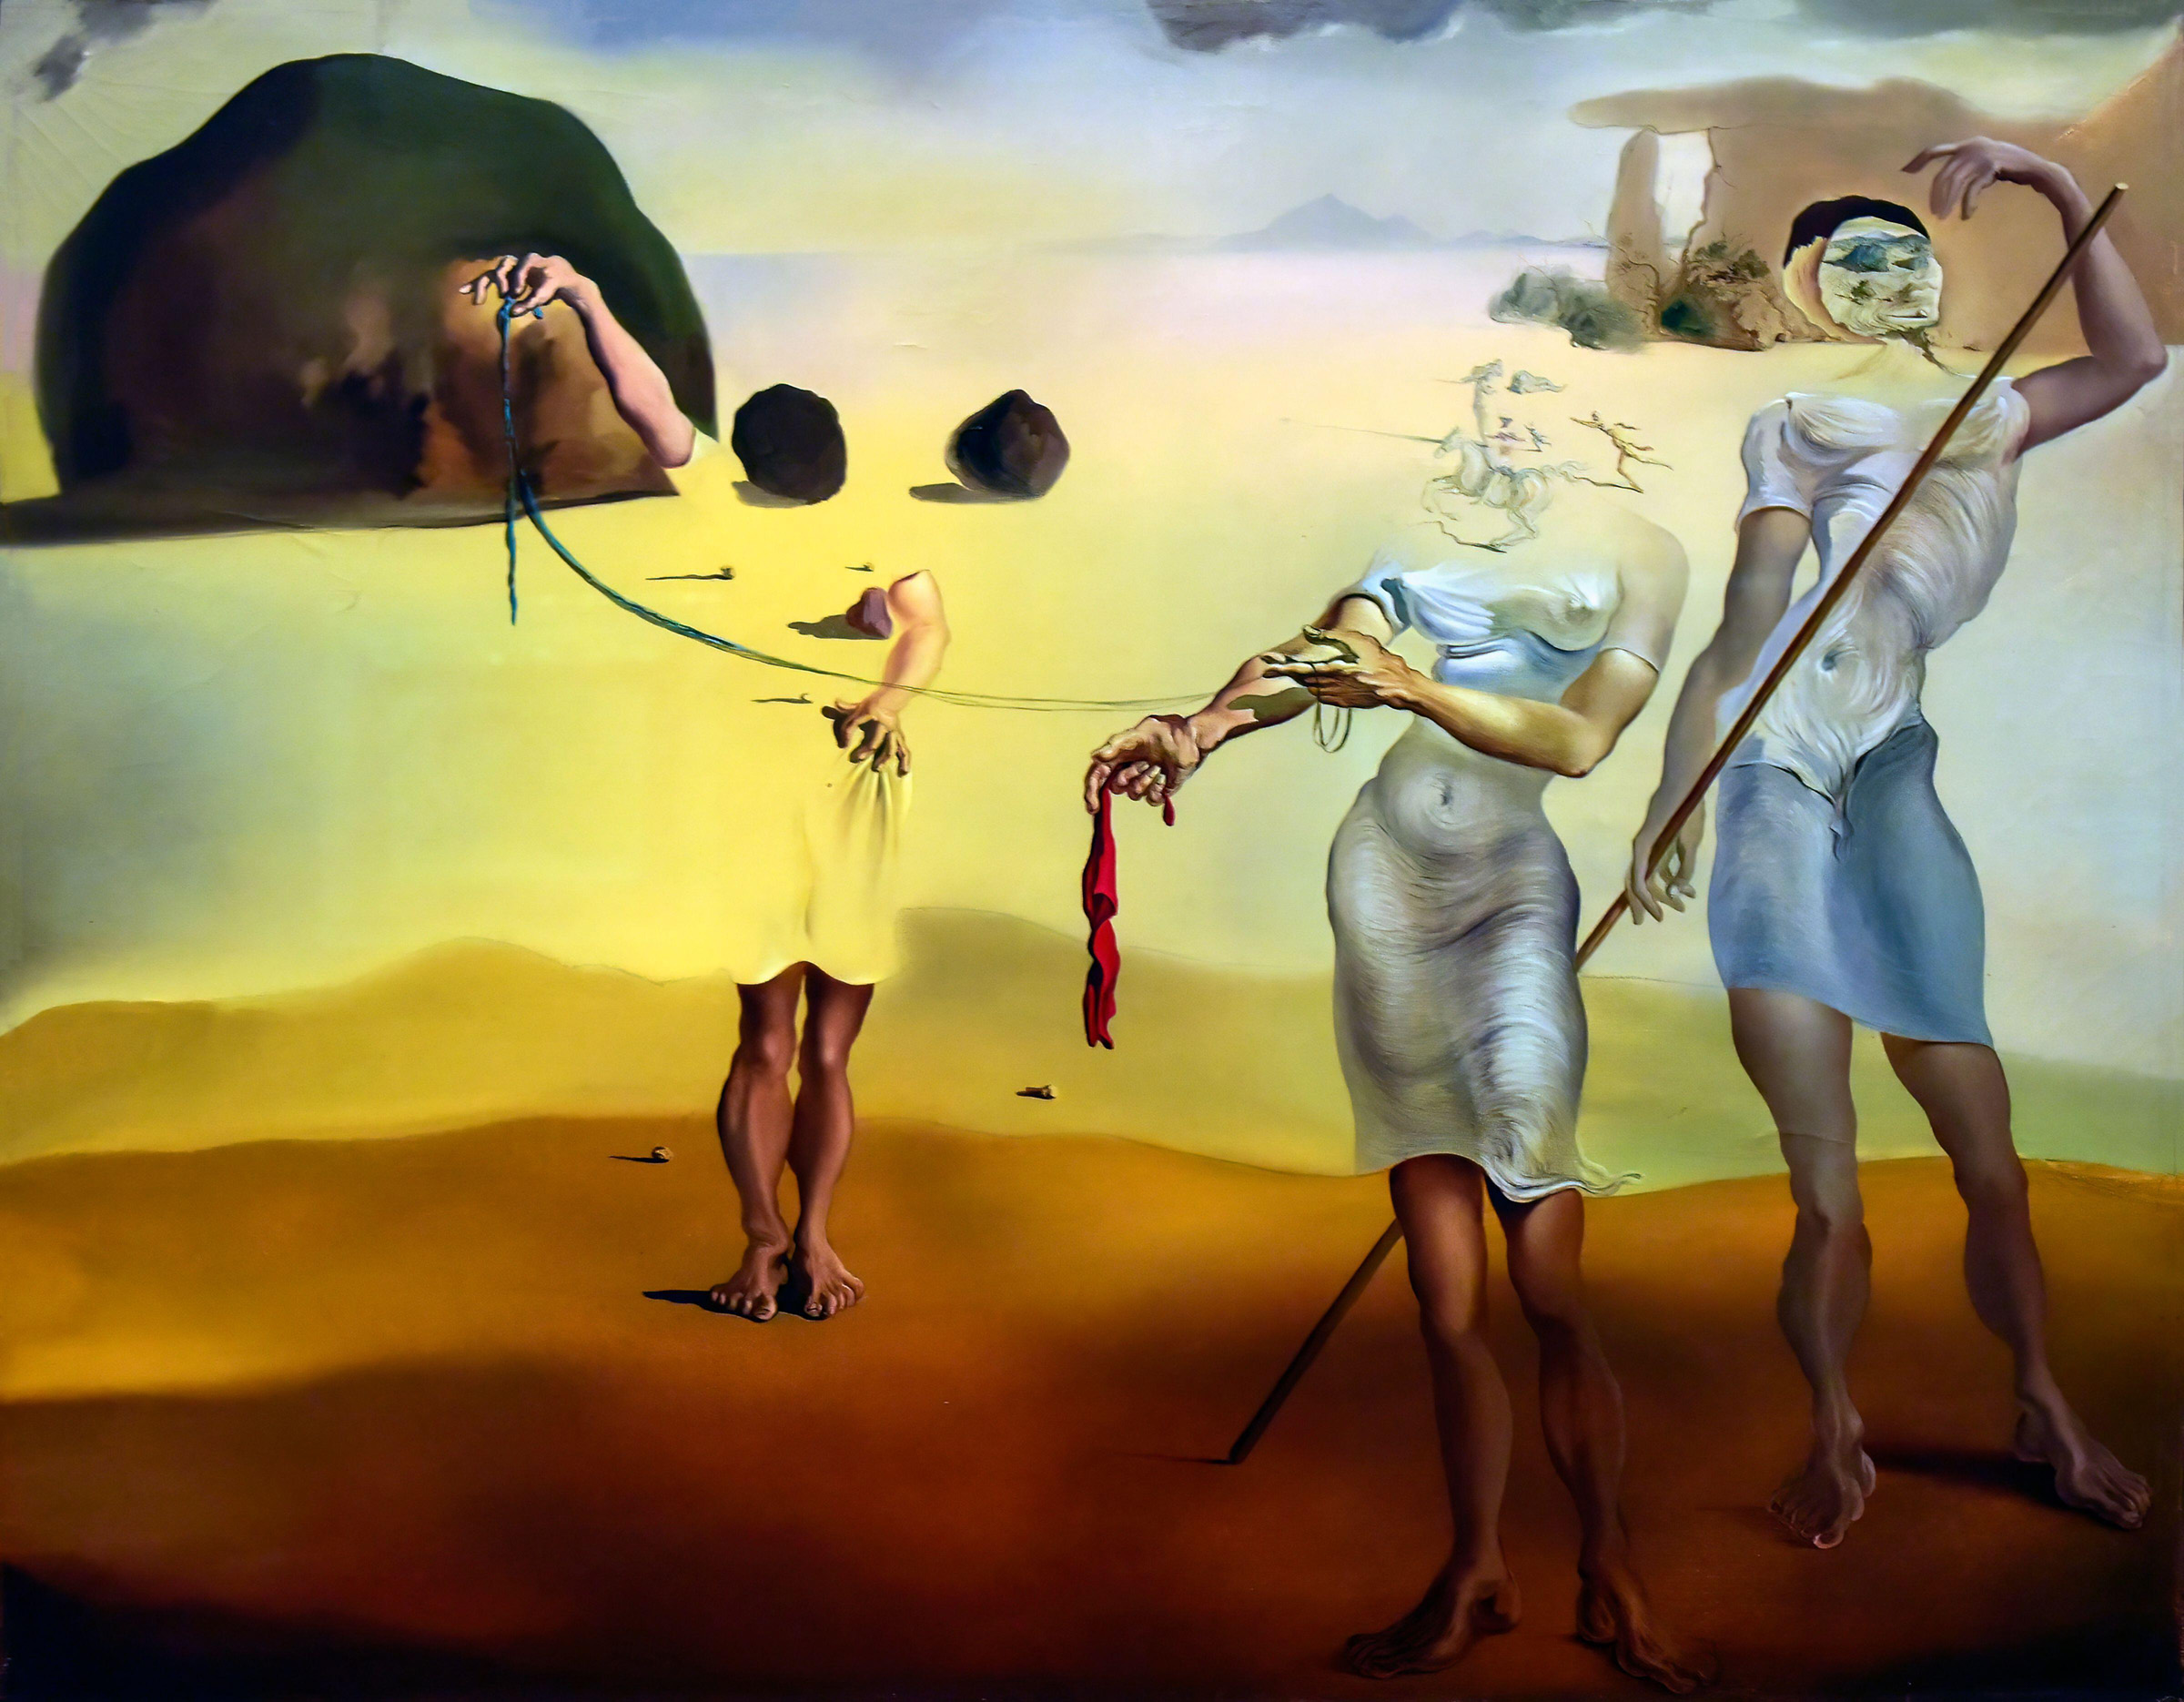 Своей живописи эти художники придают. Сальвадор дали Очарованный берег с тремя жидкими грациями. Salvador Dali картины. «Очарованный берег с тремя жидкими грациями» (1938). Сальвадор дали (Salvador Dali) (1904-1989).